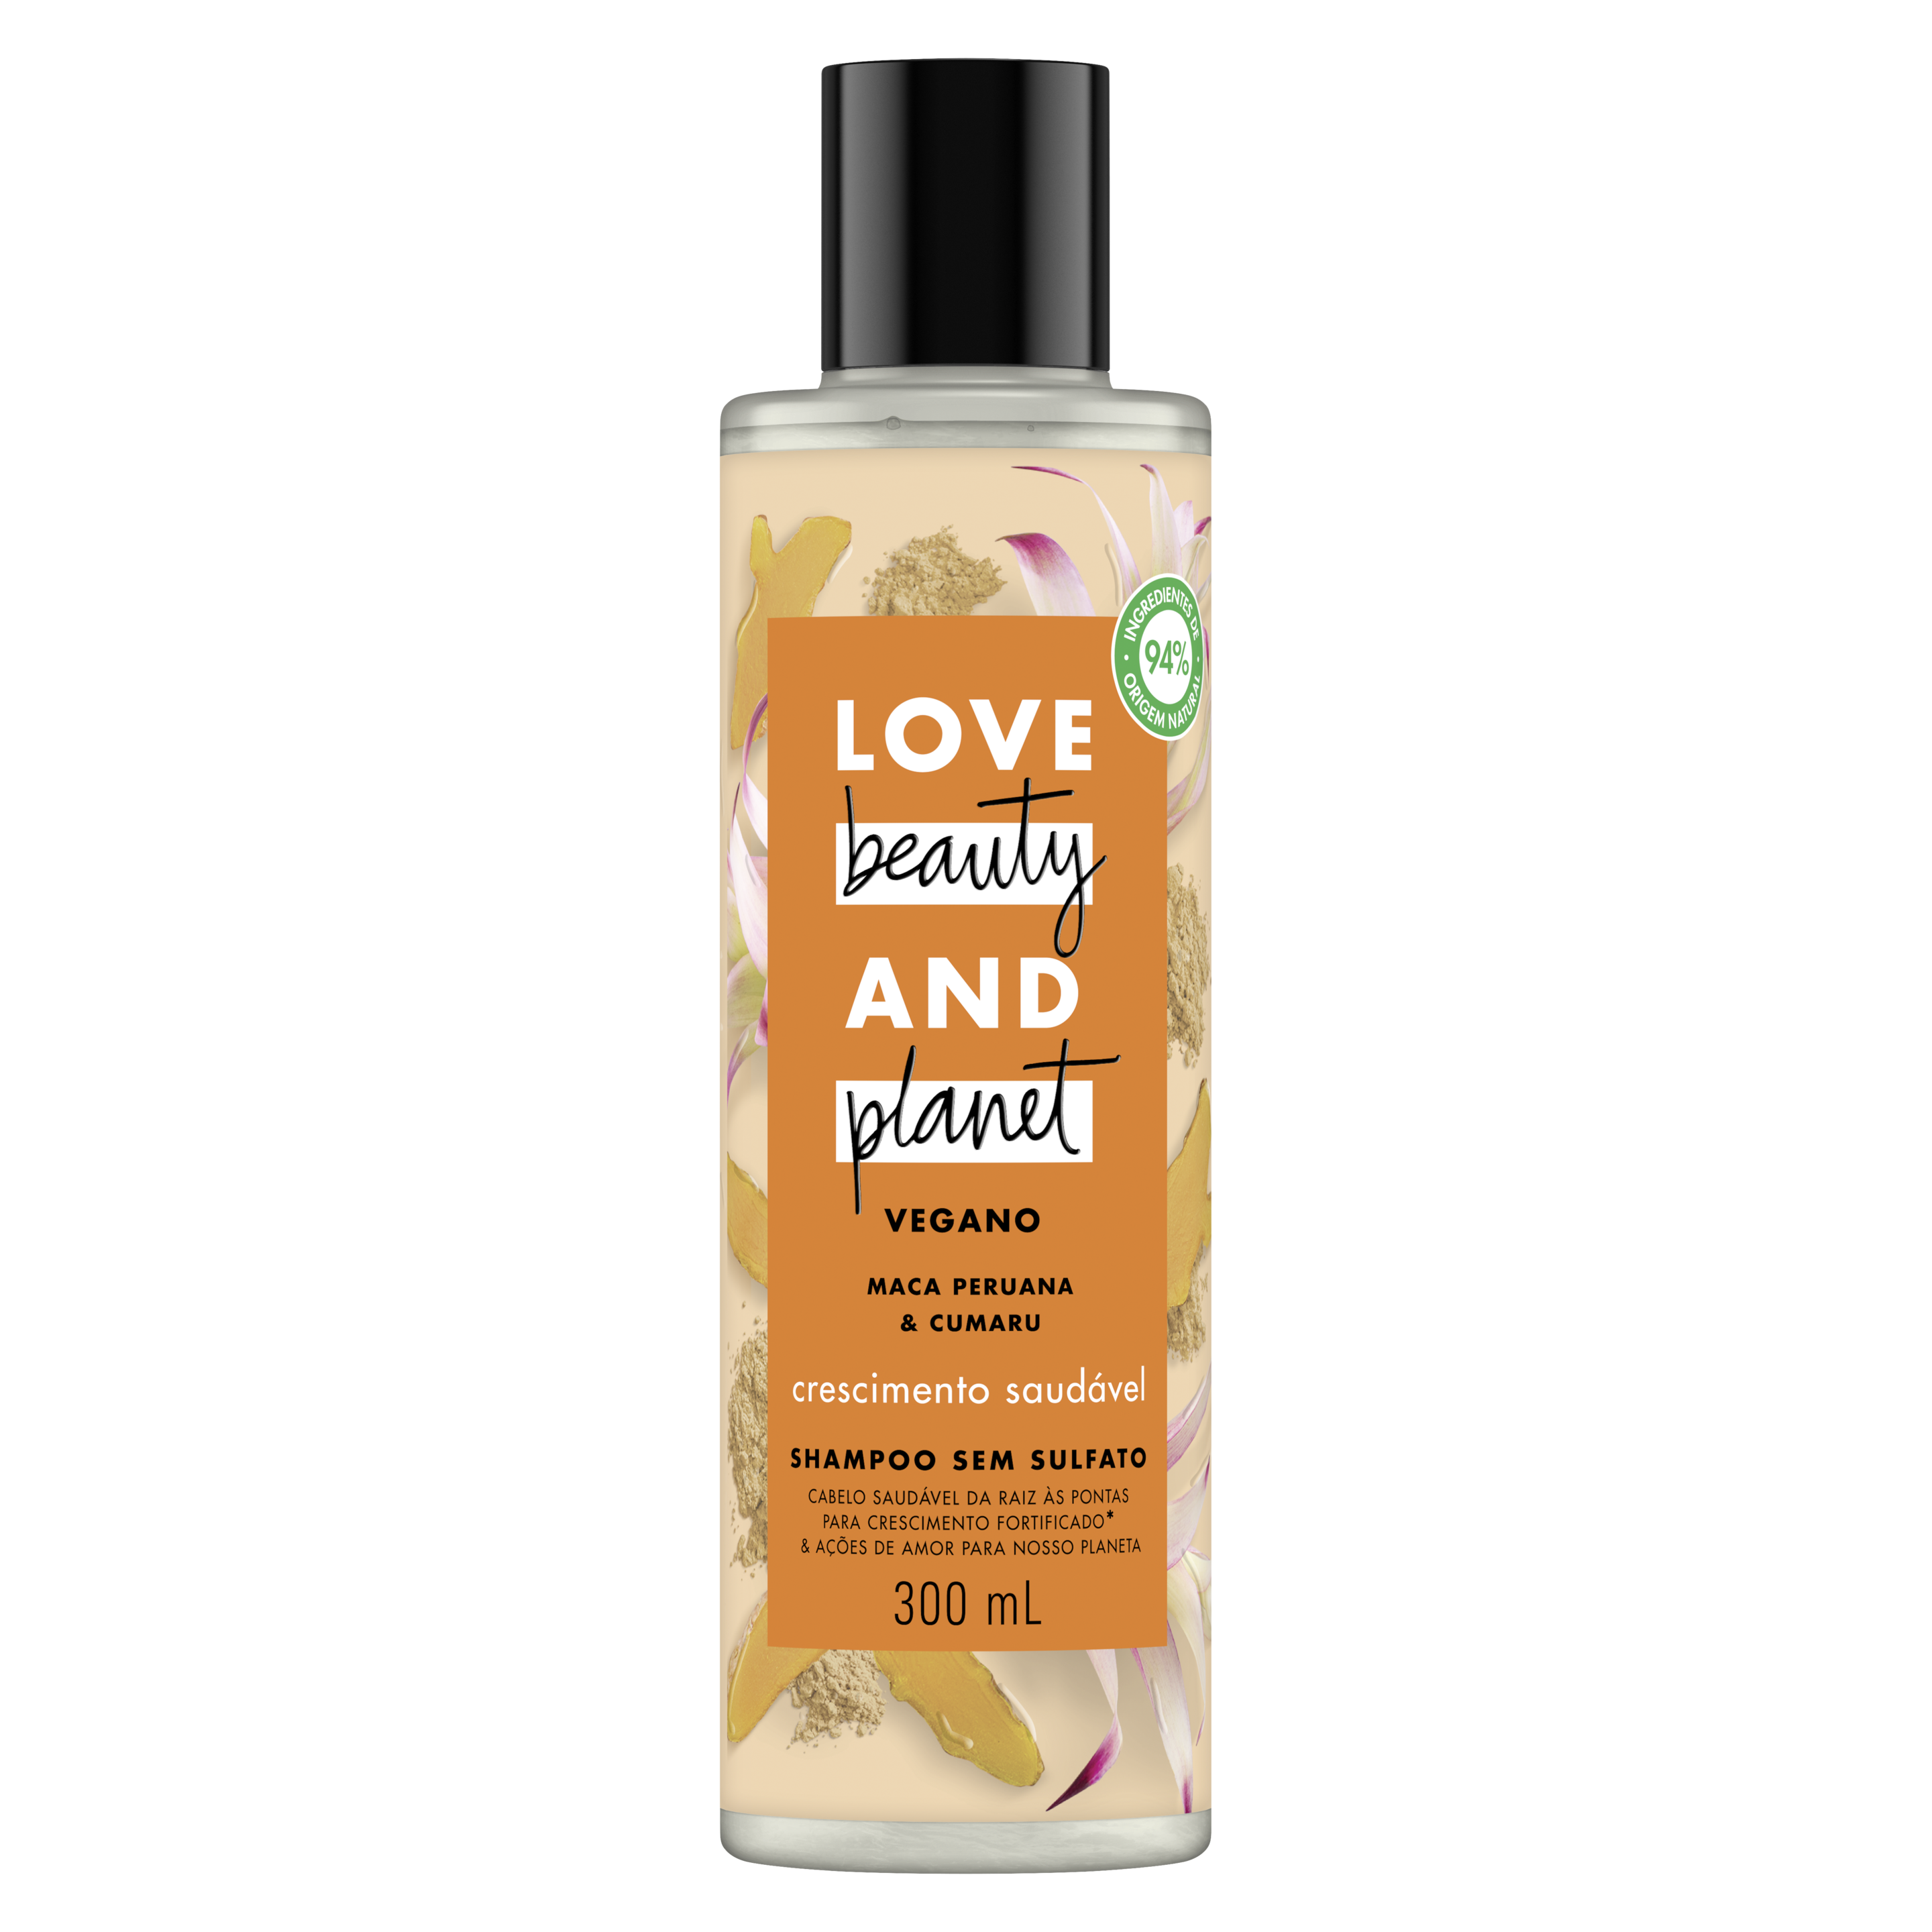 Frente da embalagem do shampoo Love Beauty and Planet maca peruana e cumaru 300 ml